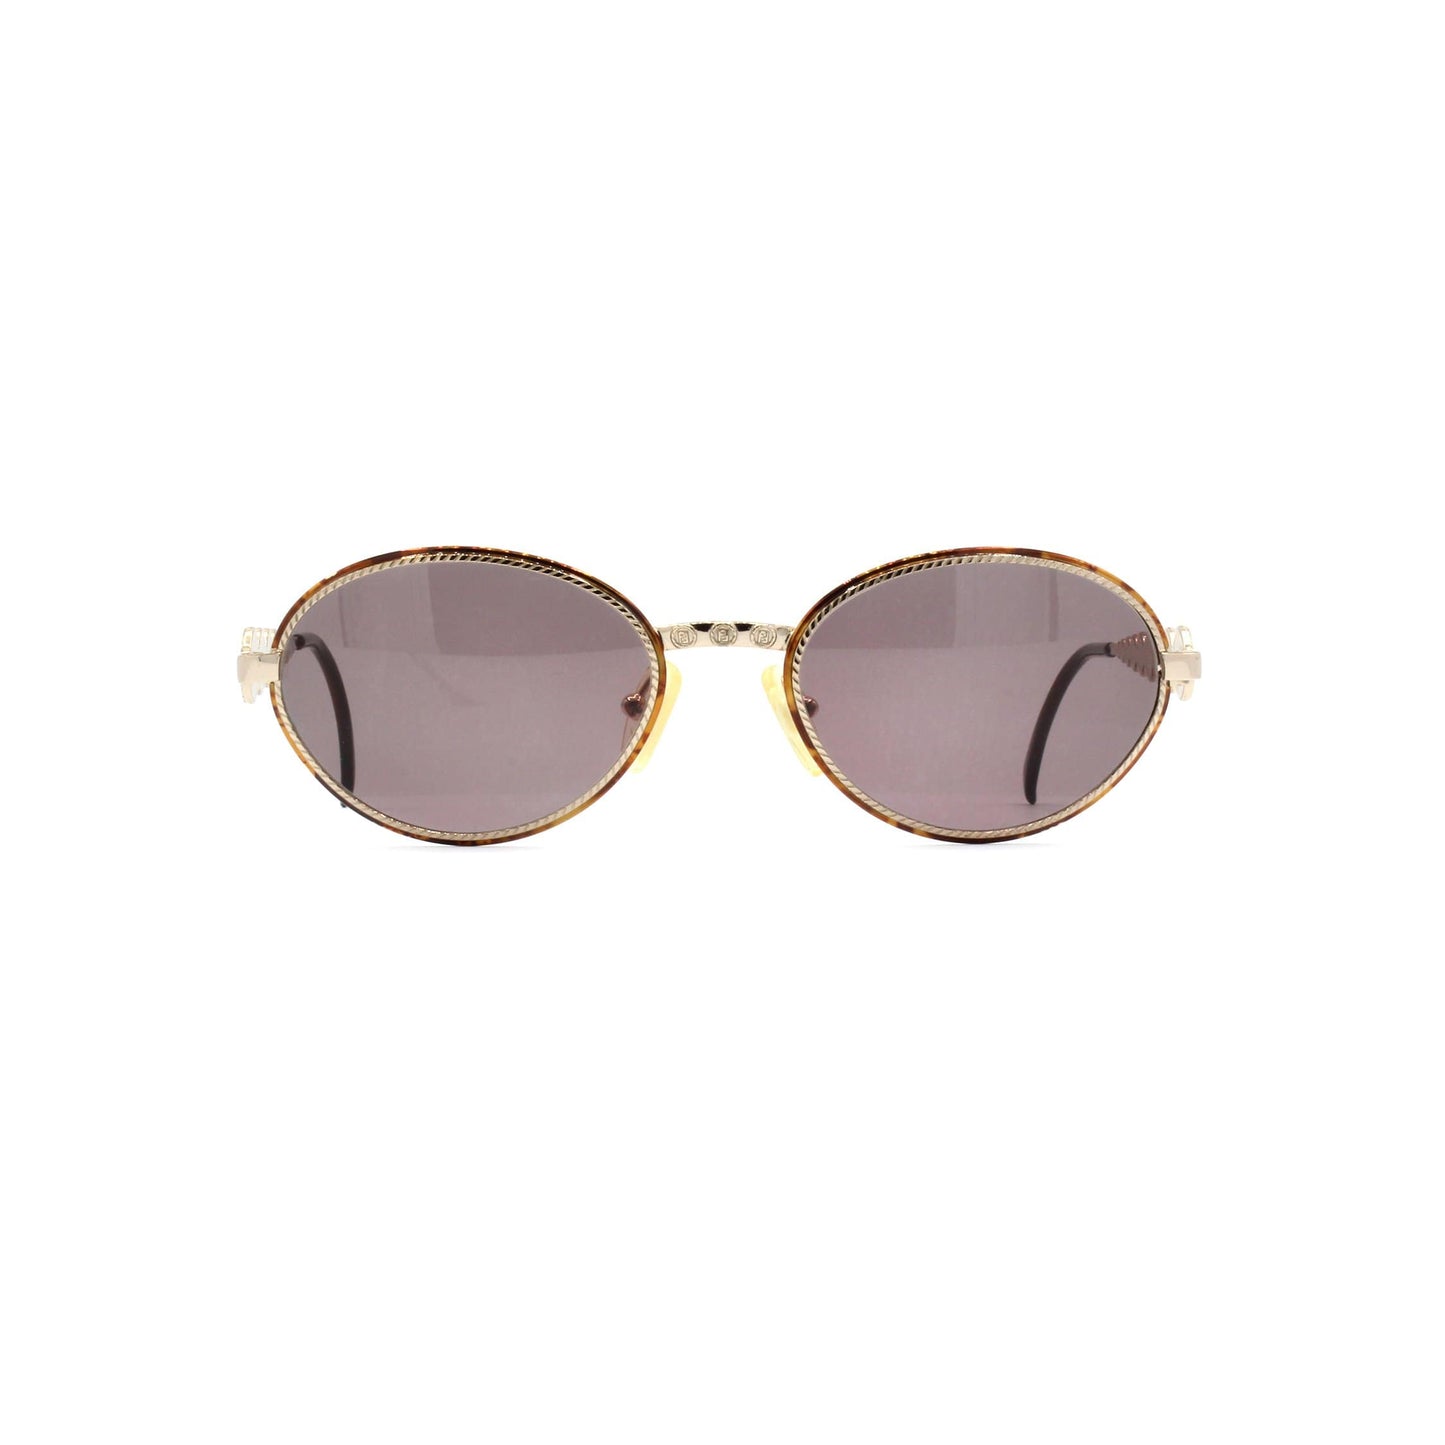 Vintage Fendi FS 110 HAVANA Sunglasses RSTKD Vintage